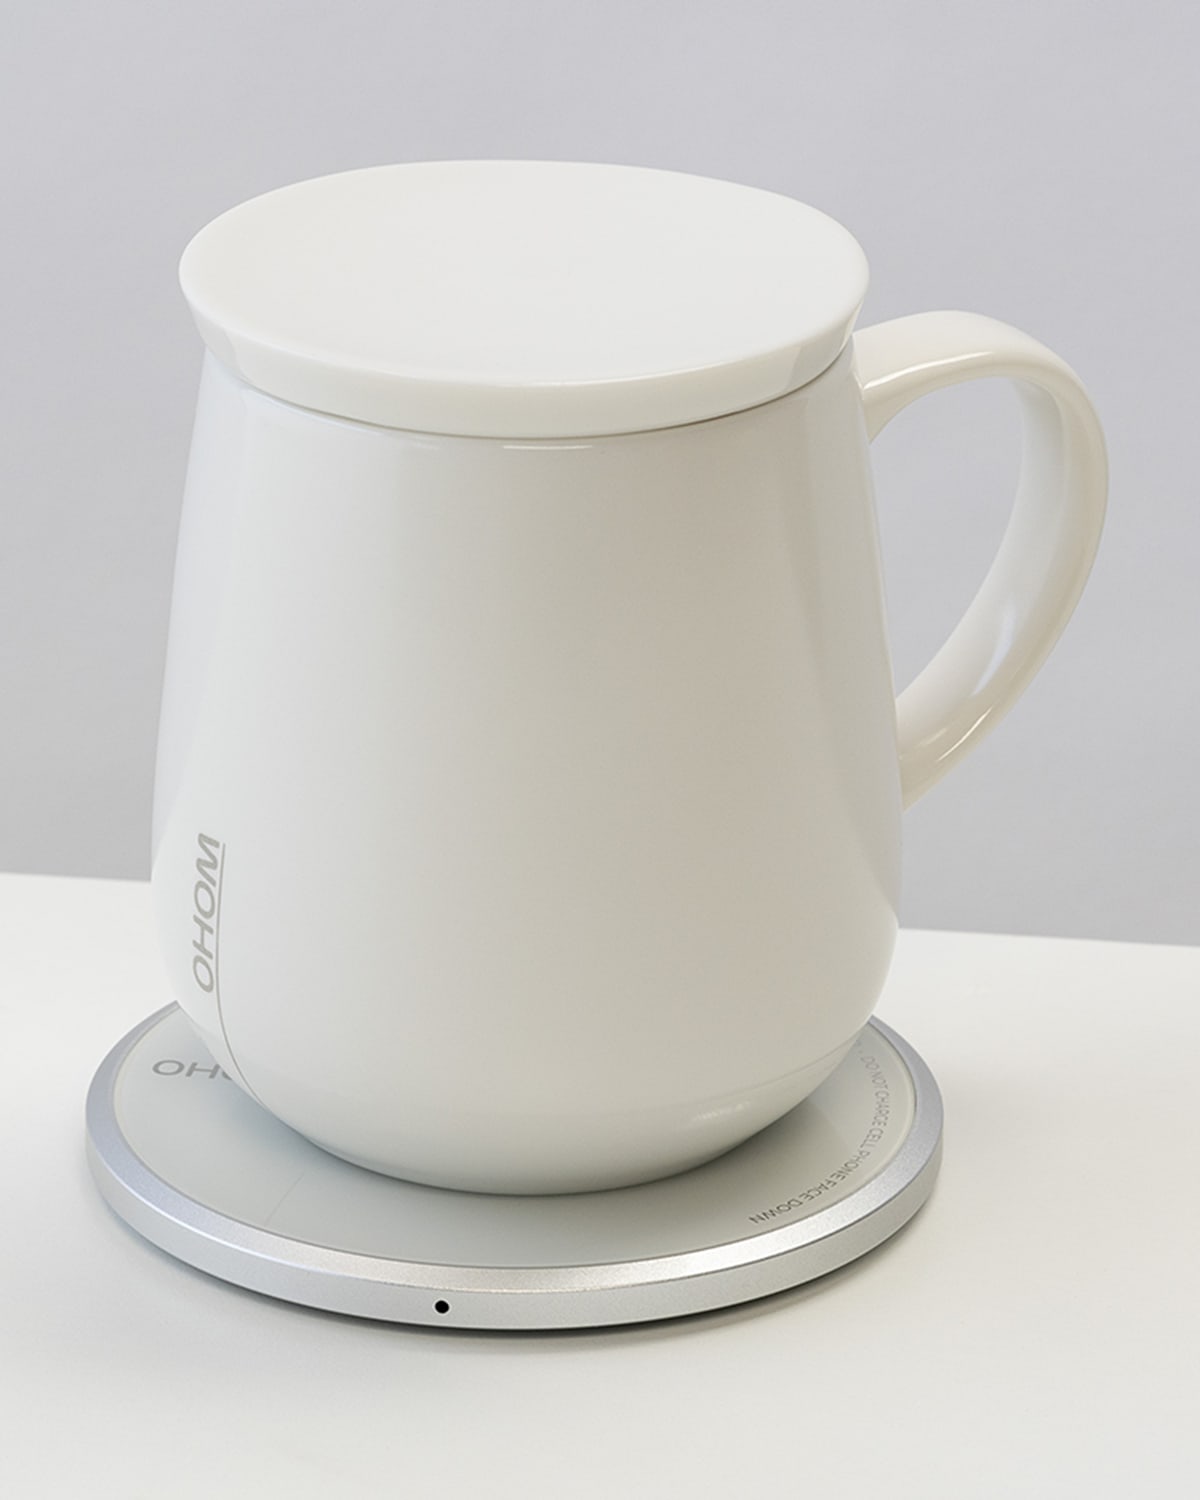 Ohom Ui Self-heating Mug, 12 Oz. In White